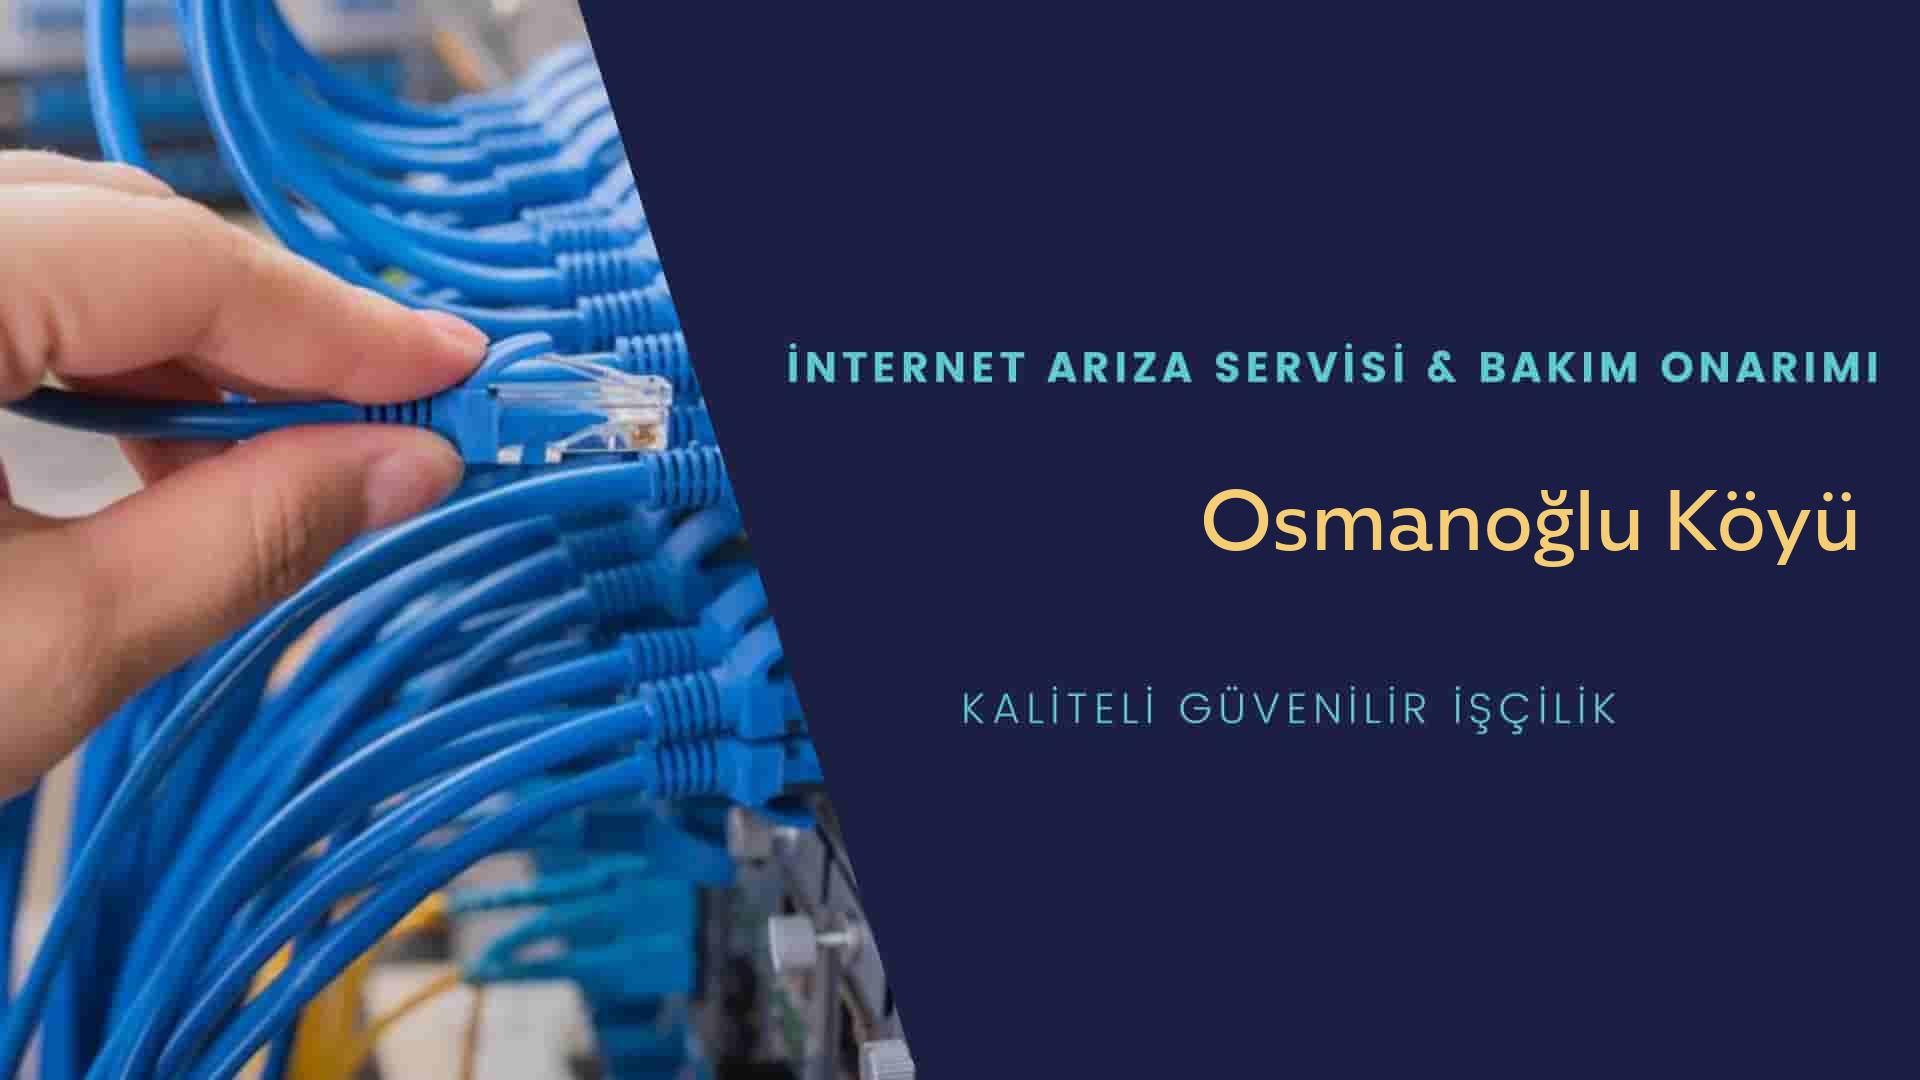 Osmanoğlu Köyü internet kablosu çekimi yapan yerler veya elektrikçiler mi? arıyorsunuz doğru yerdesiniz o zaman sizlere 7/24 yardımcı olacak profesyonel ustalarımız bir telefon kadar yakındır size.